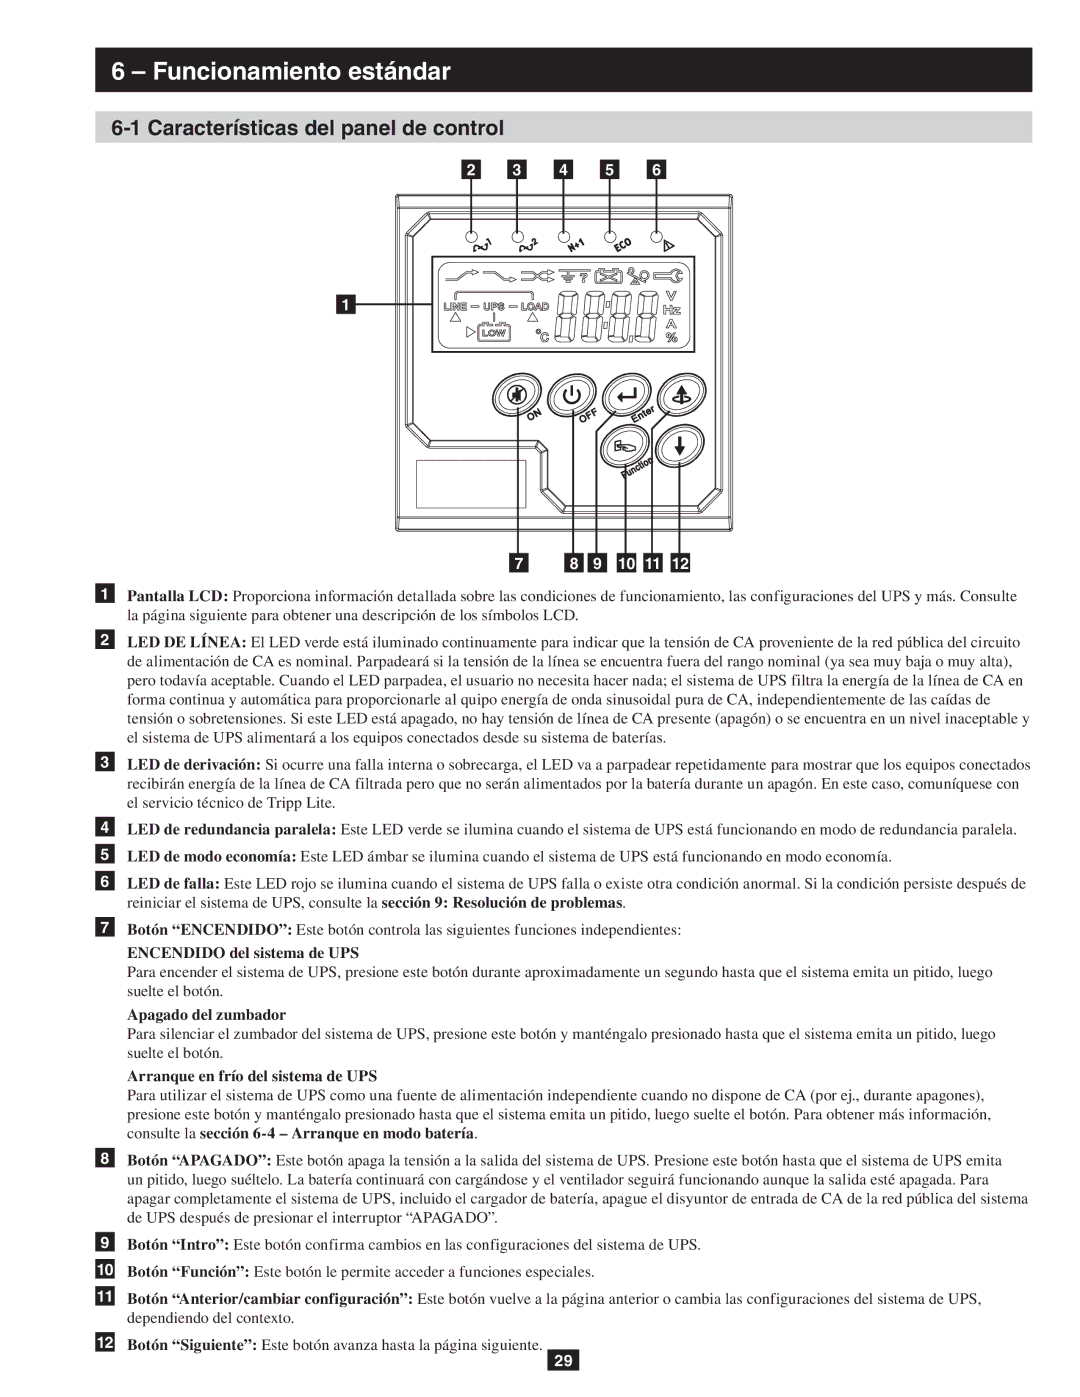 Tripp Lite SU10KRT3/1X owner manual Funcionamiento estándar, Características del panel de control, 9 10 11 